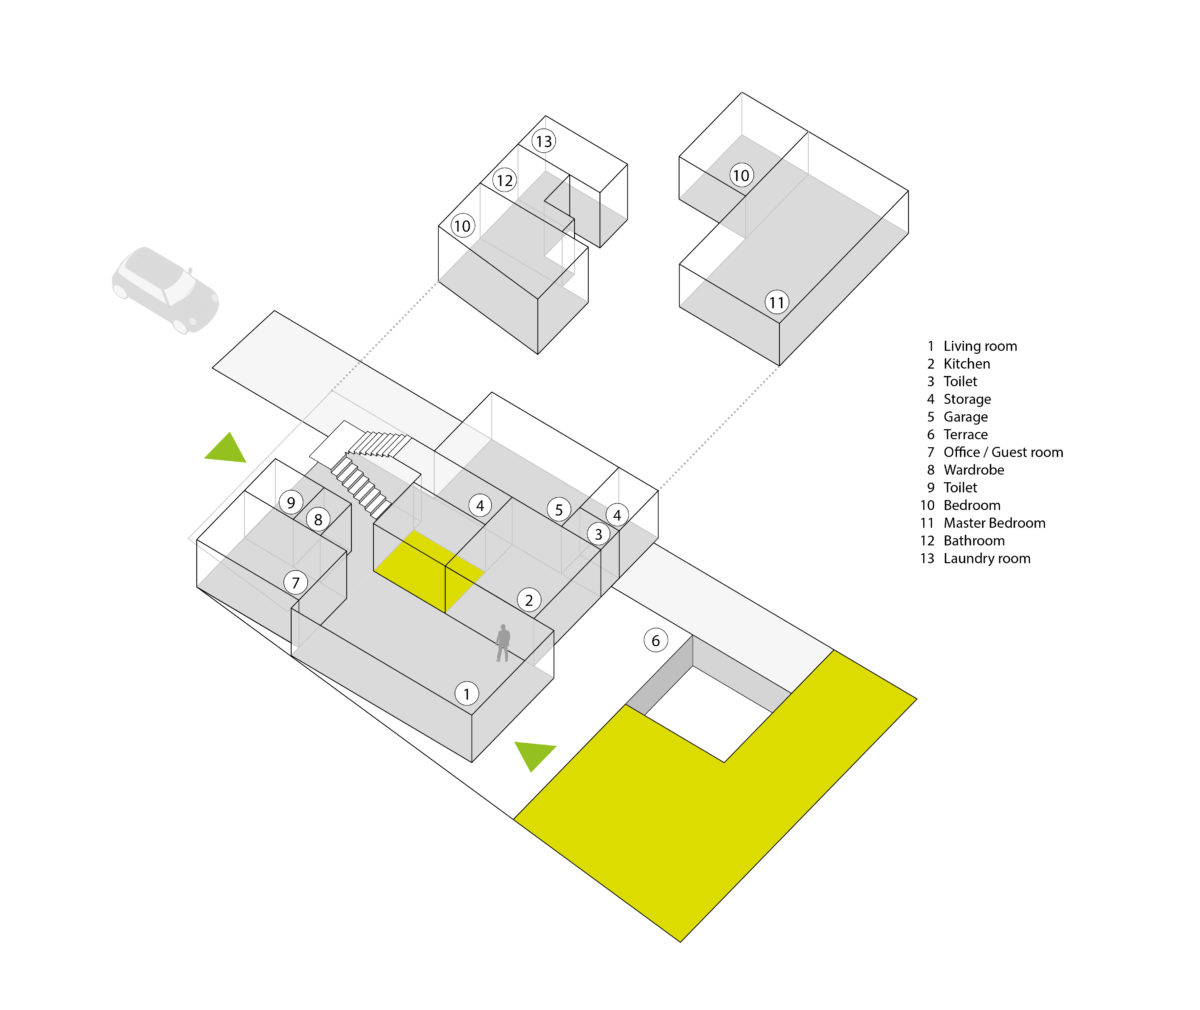 aqso arquitectos office, casa, vivienda, vista axonométrica, diagrama espacial, usos, forma y función, puntos de acceso, garaje, jardín trasero